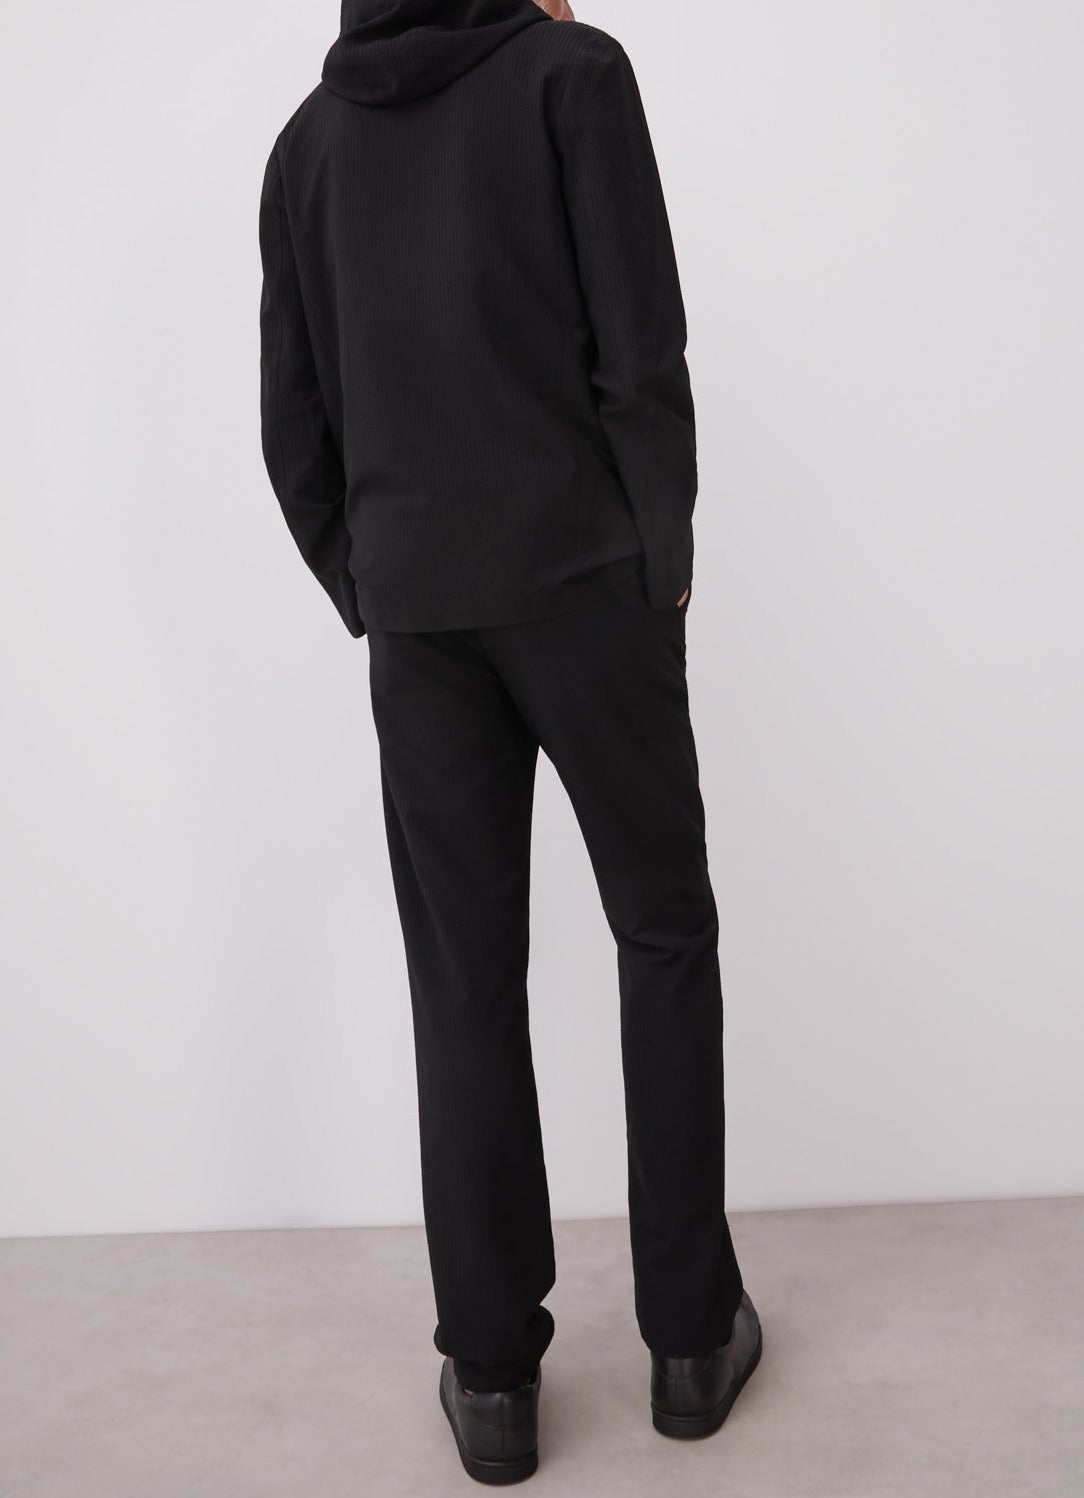 Men Overshirt | Black Hooded Overshirt With Logoed Laces by Spanish designer Adolfo Dominguez